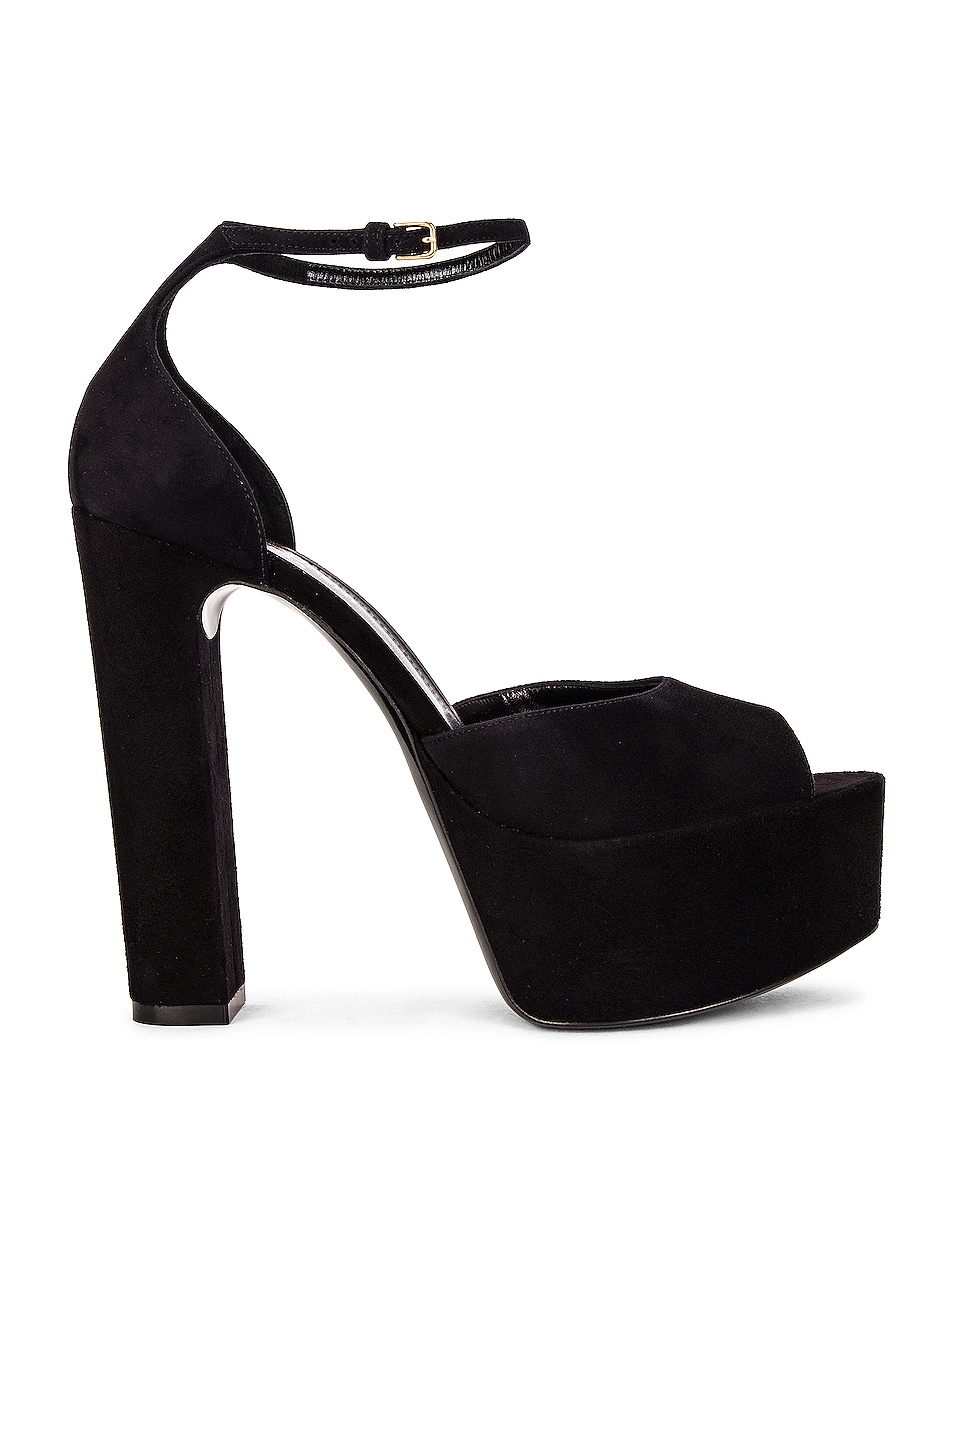 Saint Laurent Jodie Platform Sandals in Noir | FWRD